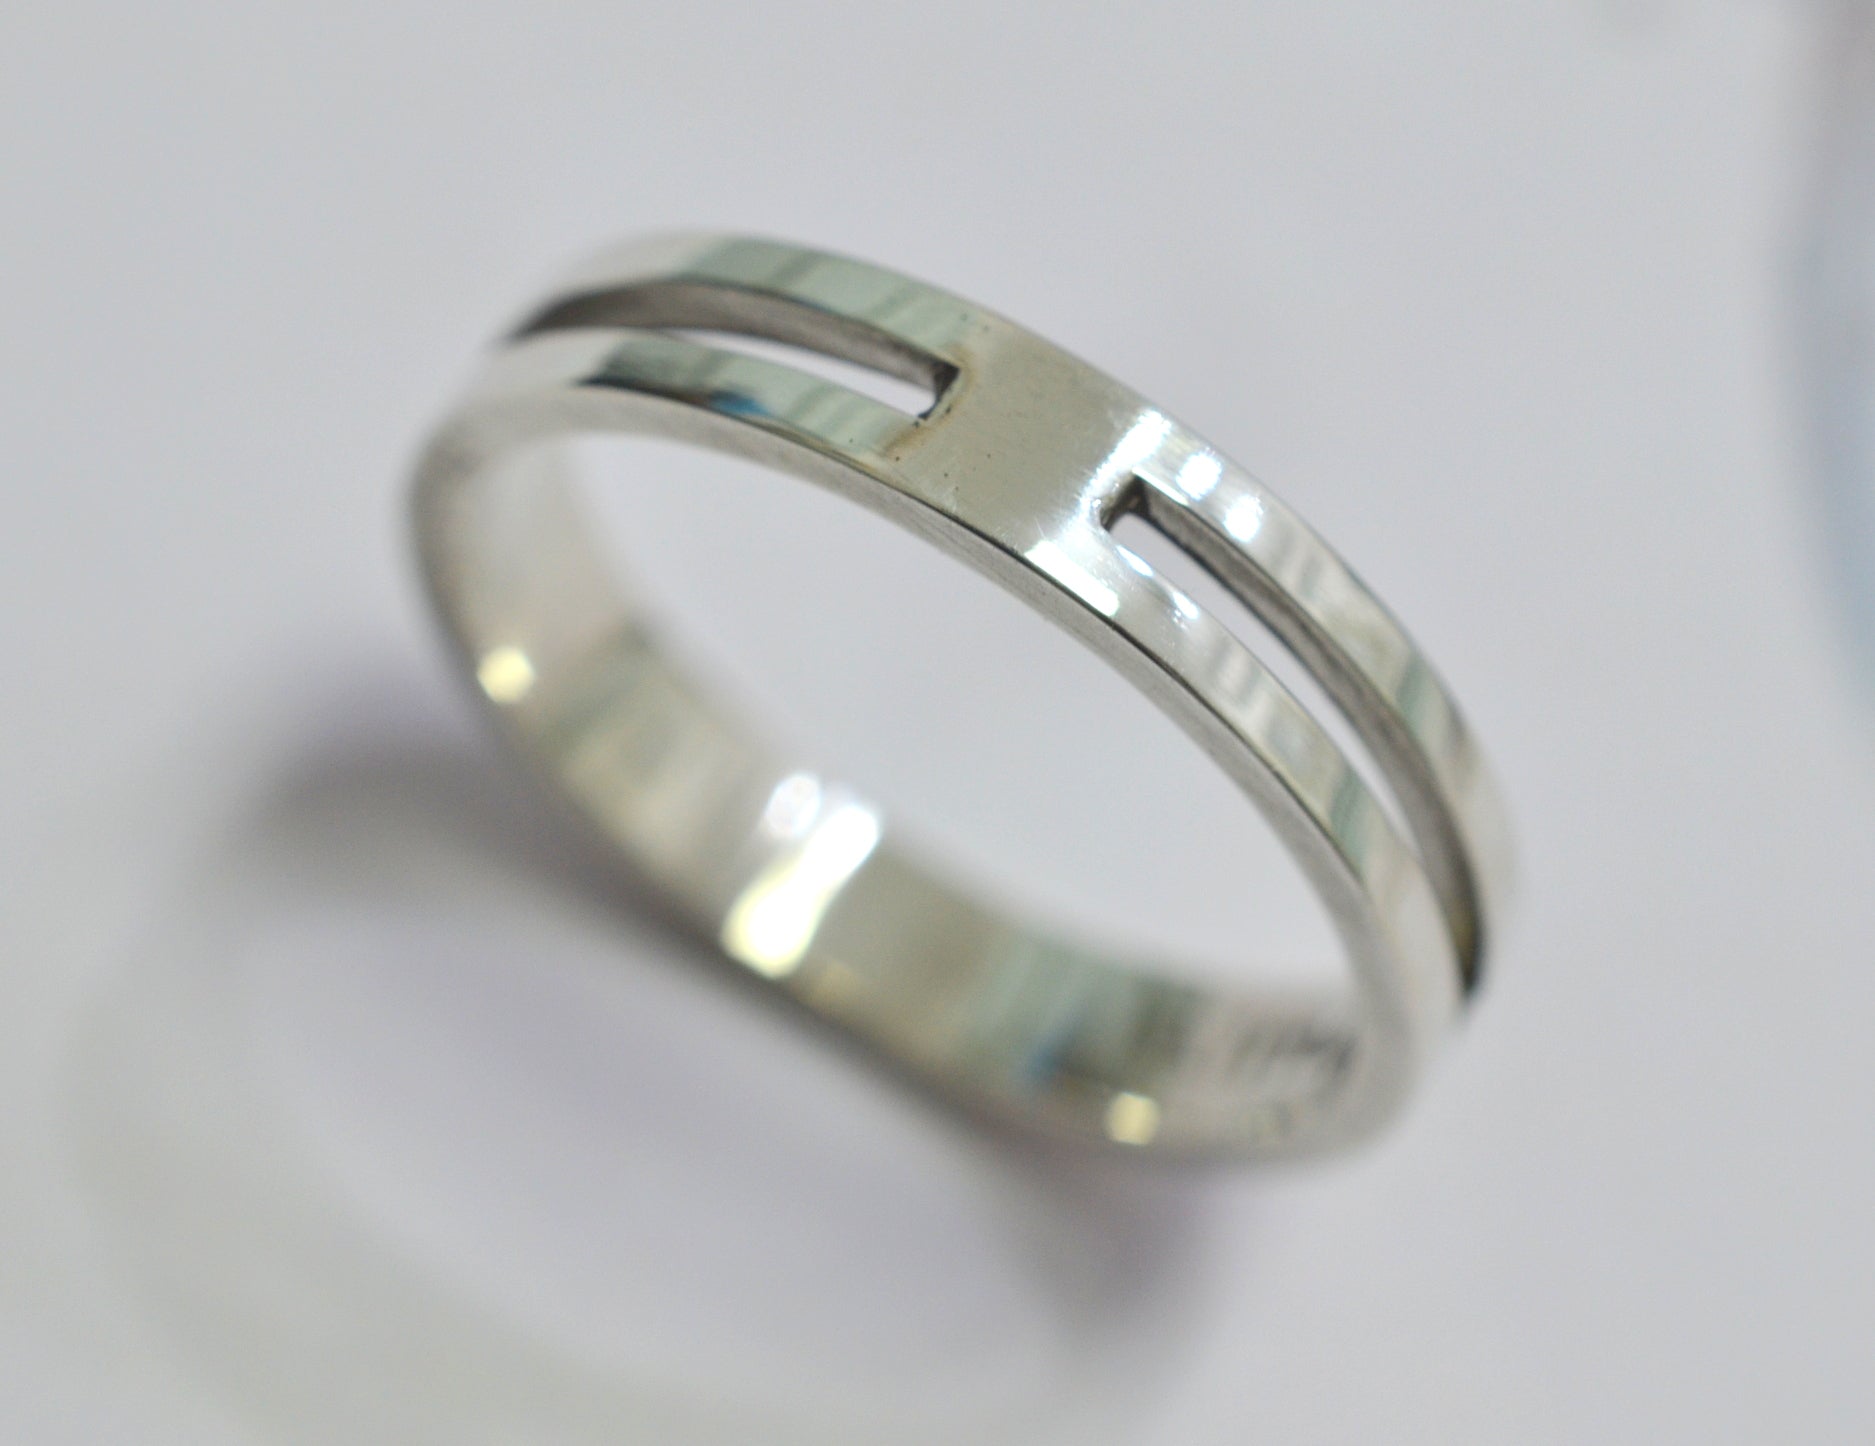 Rajwadi Polish Finger Ring Round Design Online – Hayagi